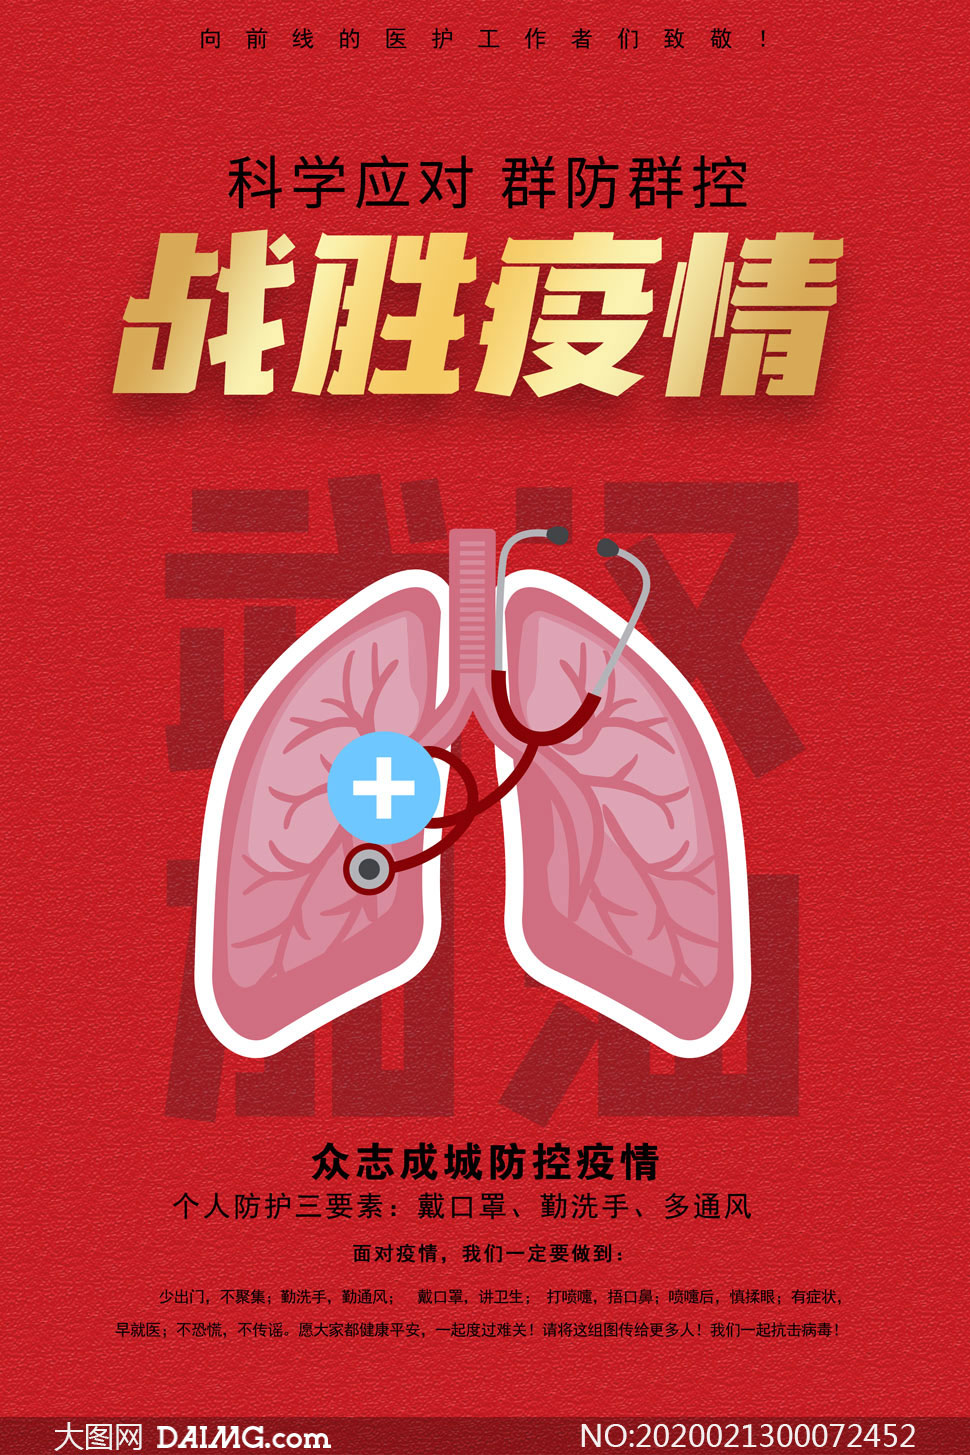 科学预防新型肺炎公益宣传海报psd素材